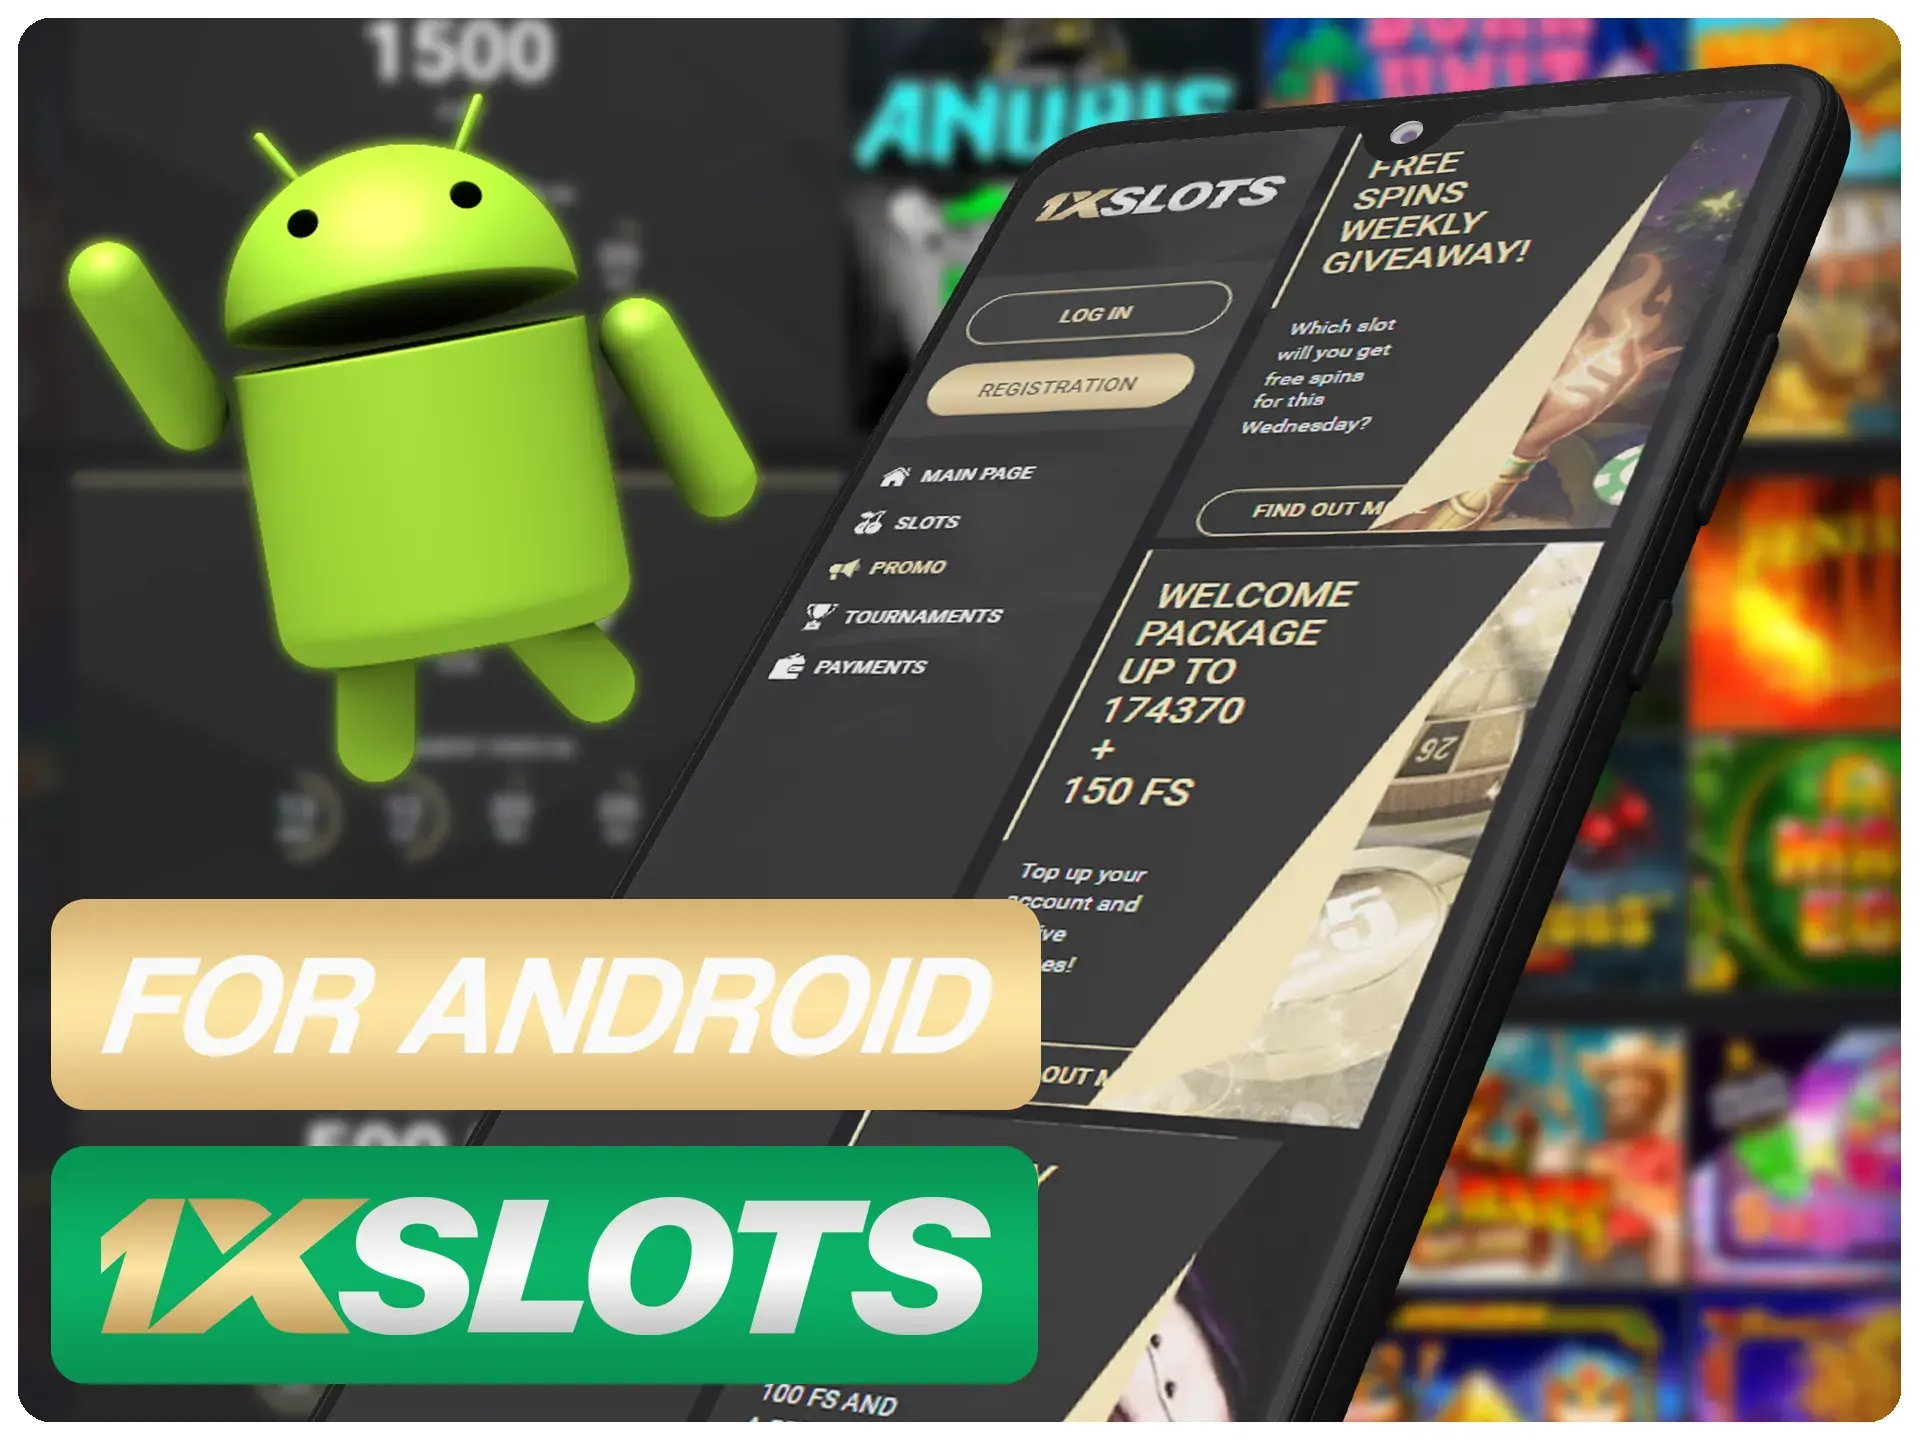 La aplicación 1xSlots se puede instalar en la mayoría de los dispositivos Android.